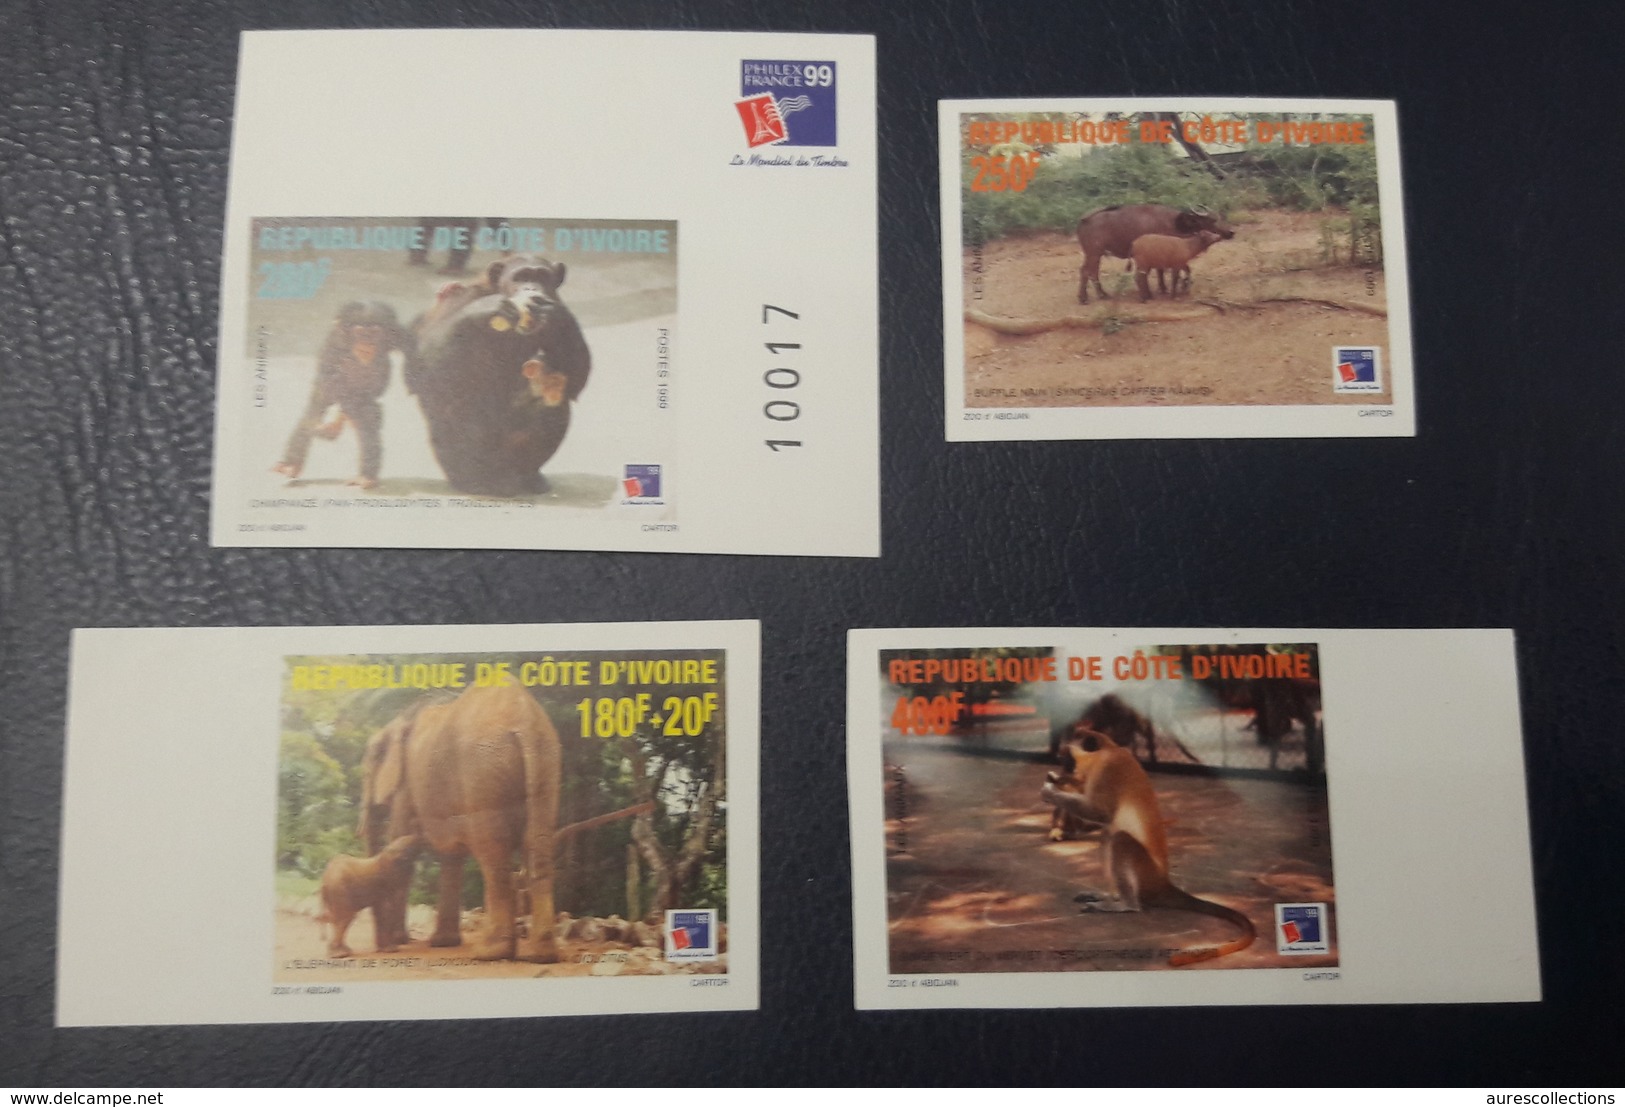 COTE D'IVOIRE IVORY COAST 1999 - IMPERF NON DENTELE ND - ANIMALS APES MONKEYS SINGES ELEPHANTS PHILEXAFRIQUE CHIMPANZE - Chimpanzees